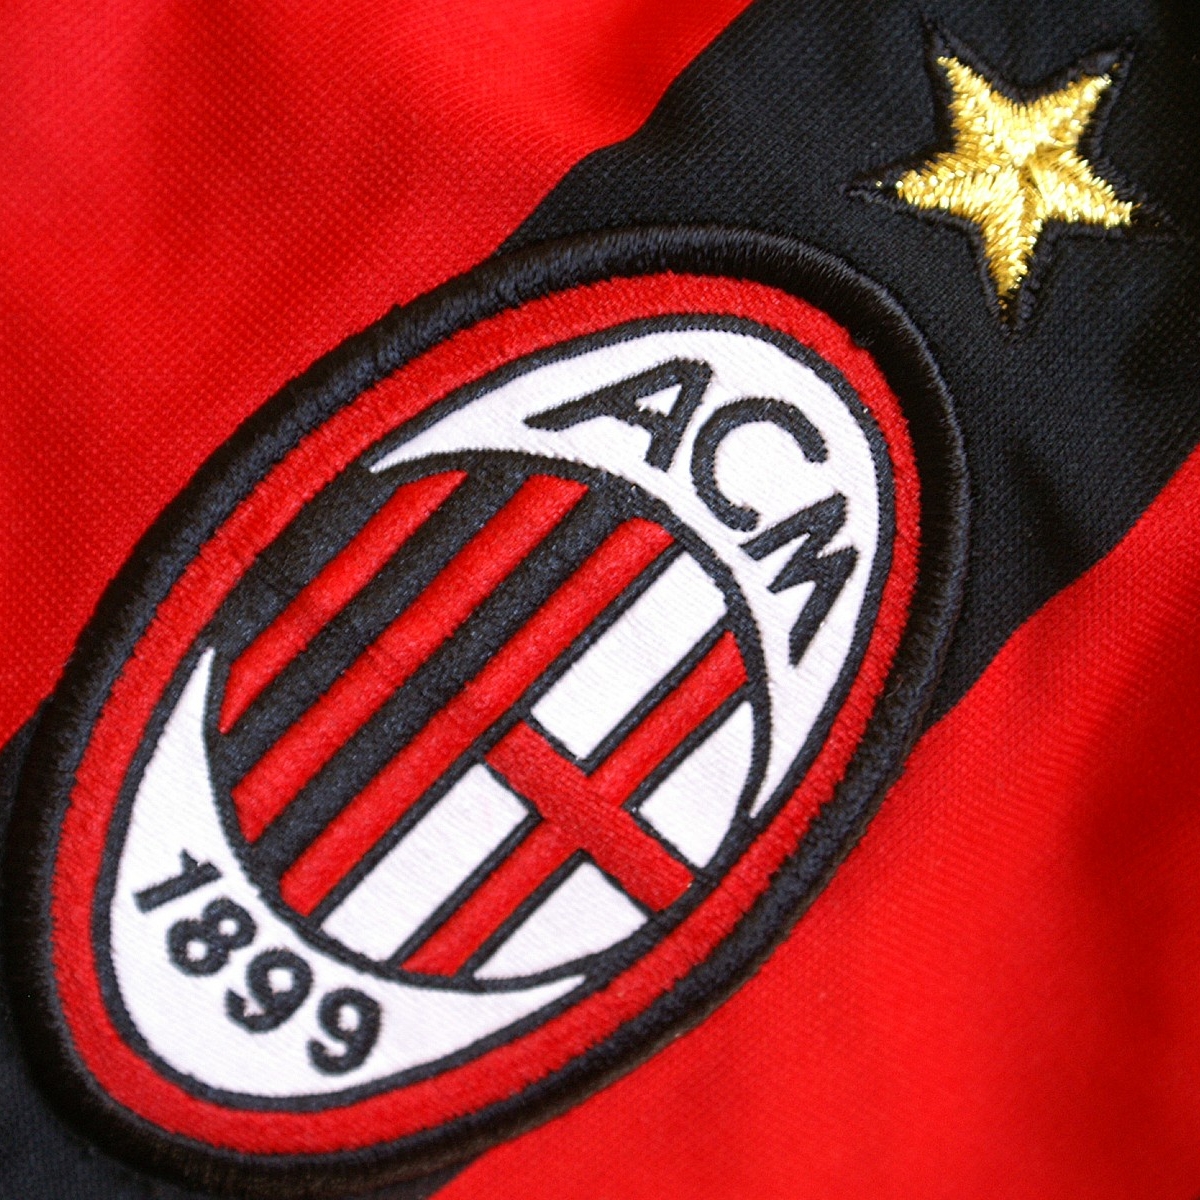 A.C. Milan Pfp